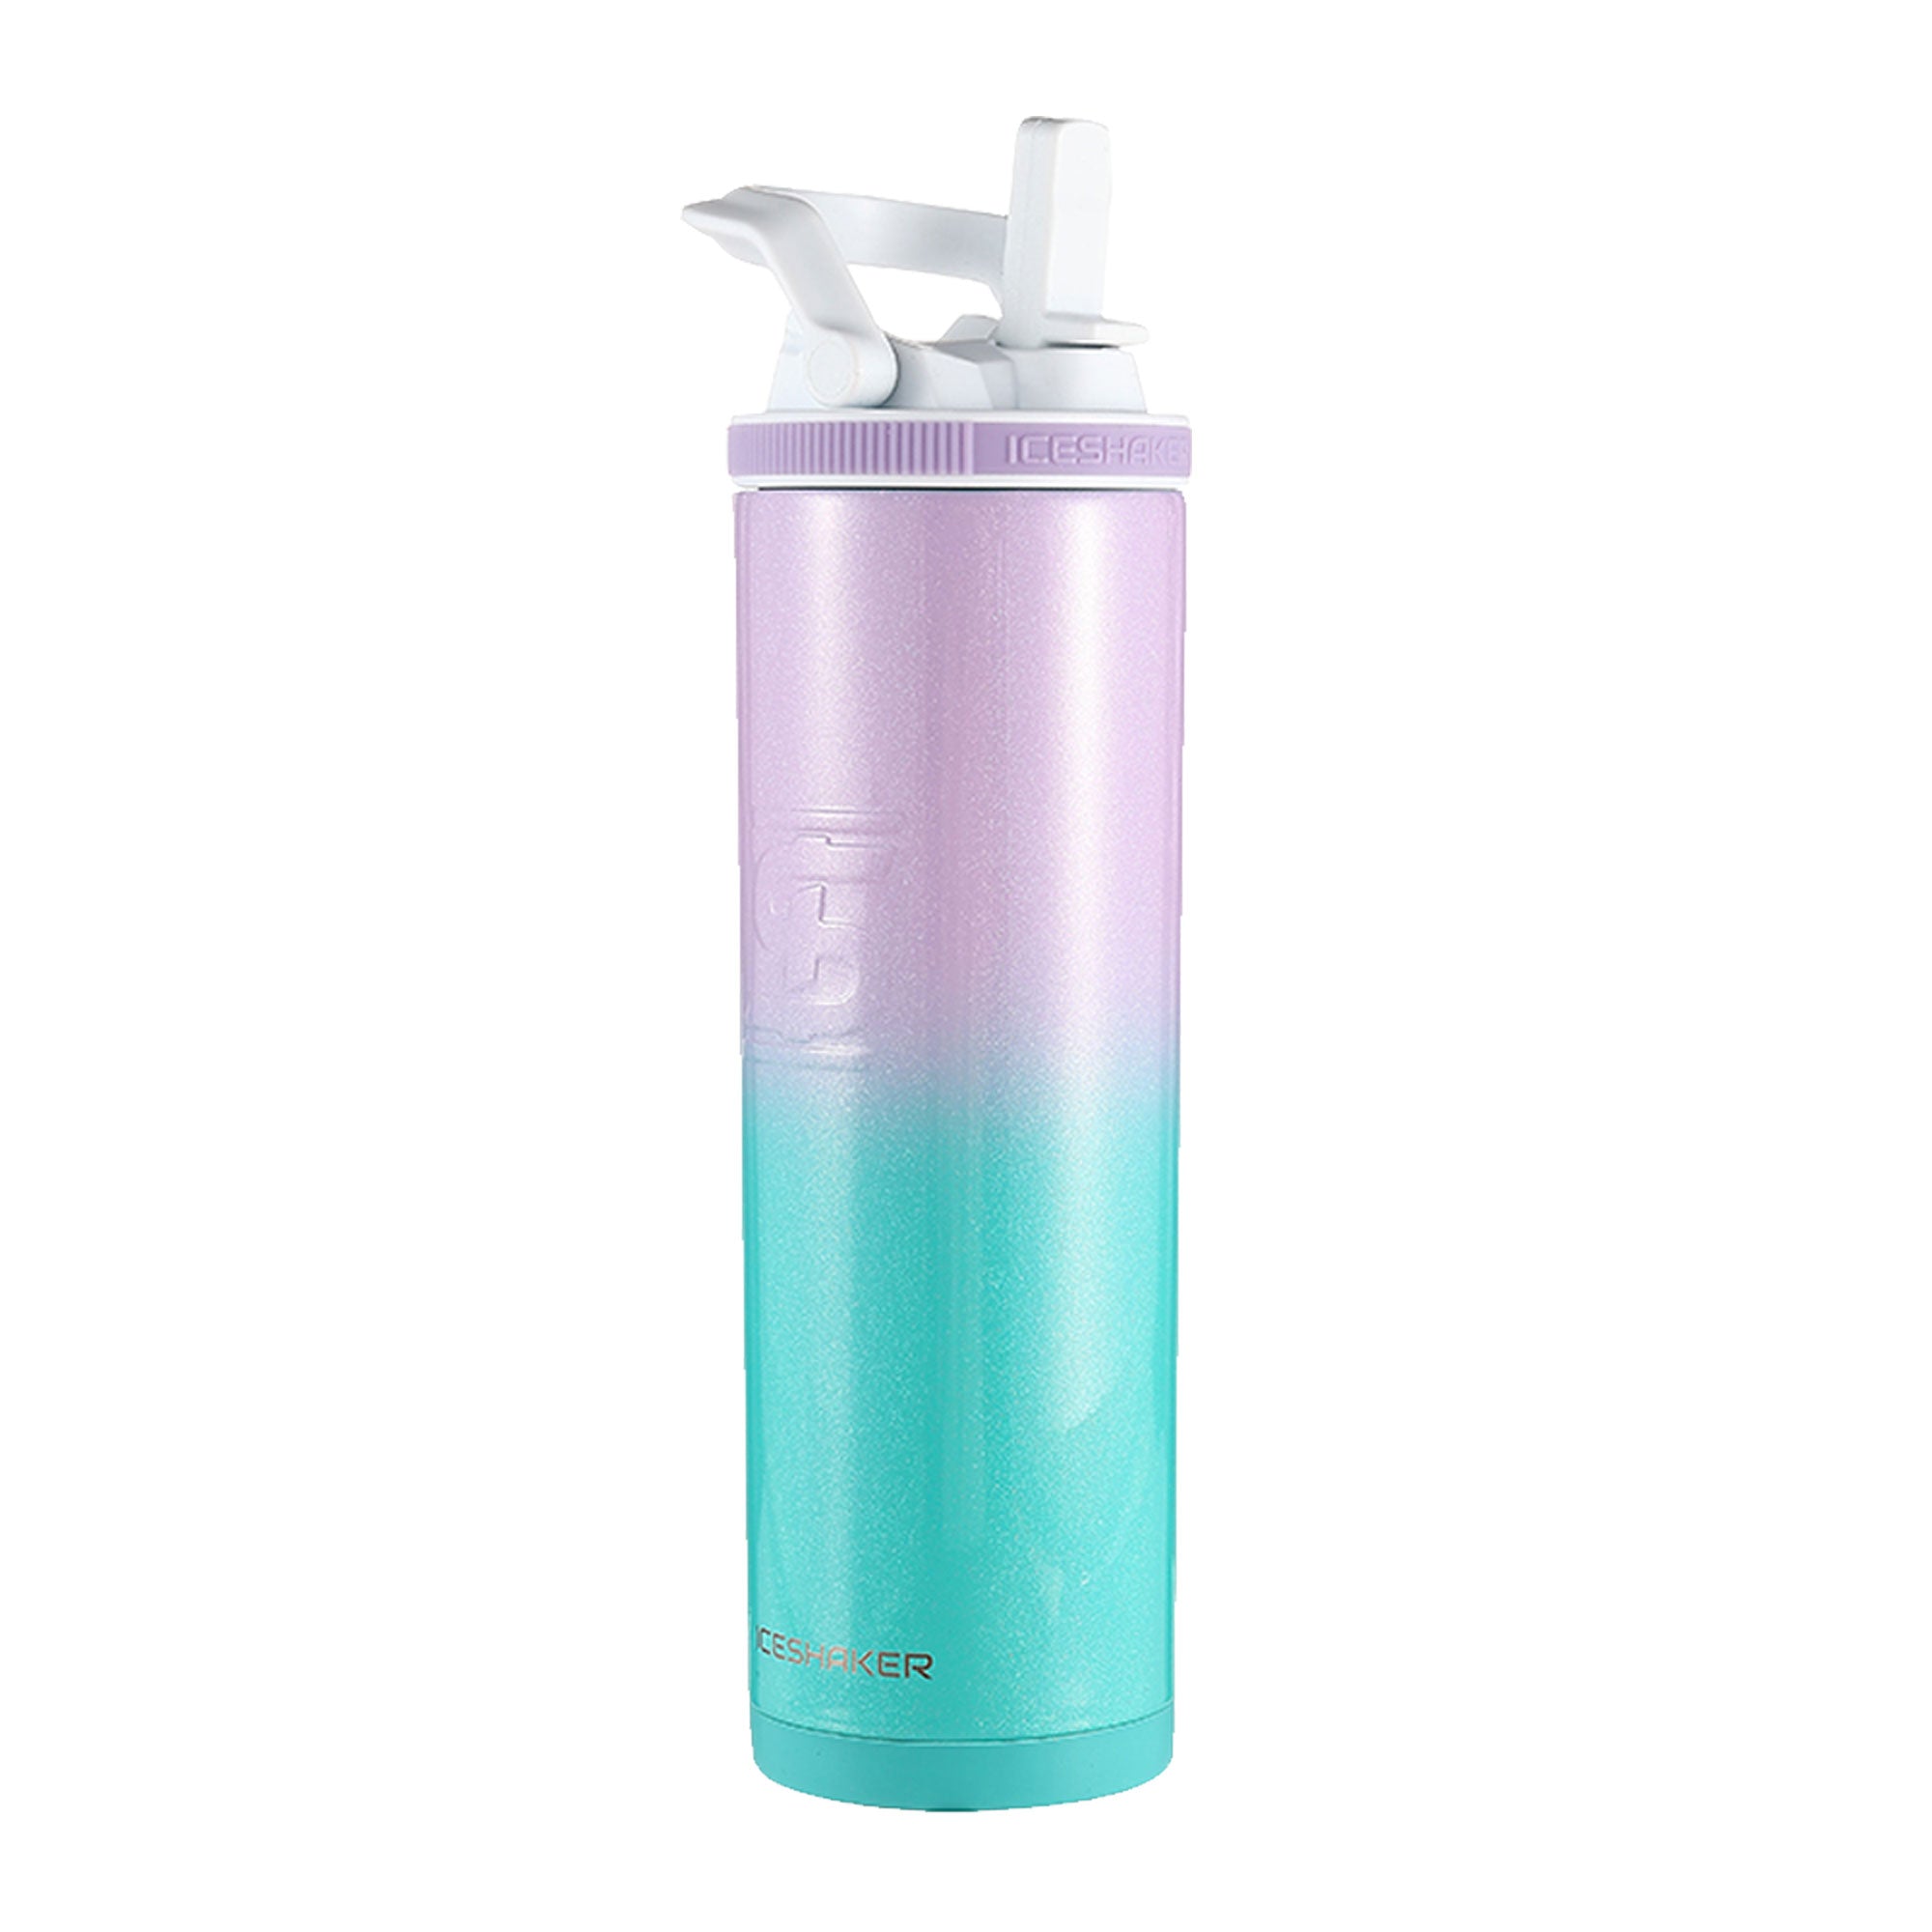 Custom Portable Sports Water Bottle w/ Flip Straw Lid - 16 oz.